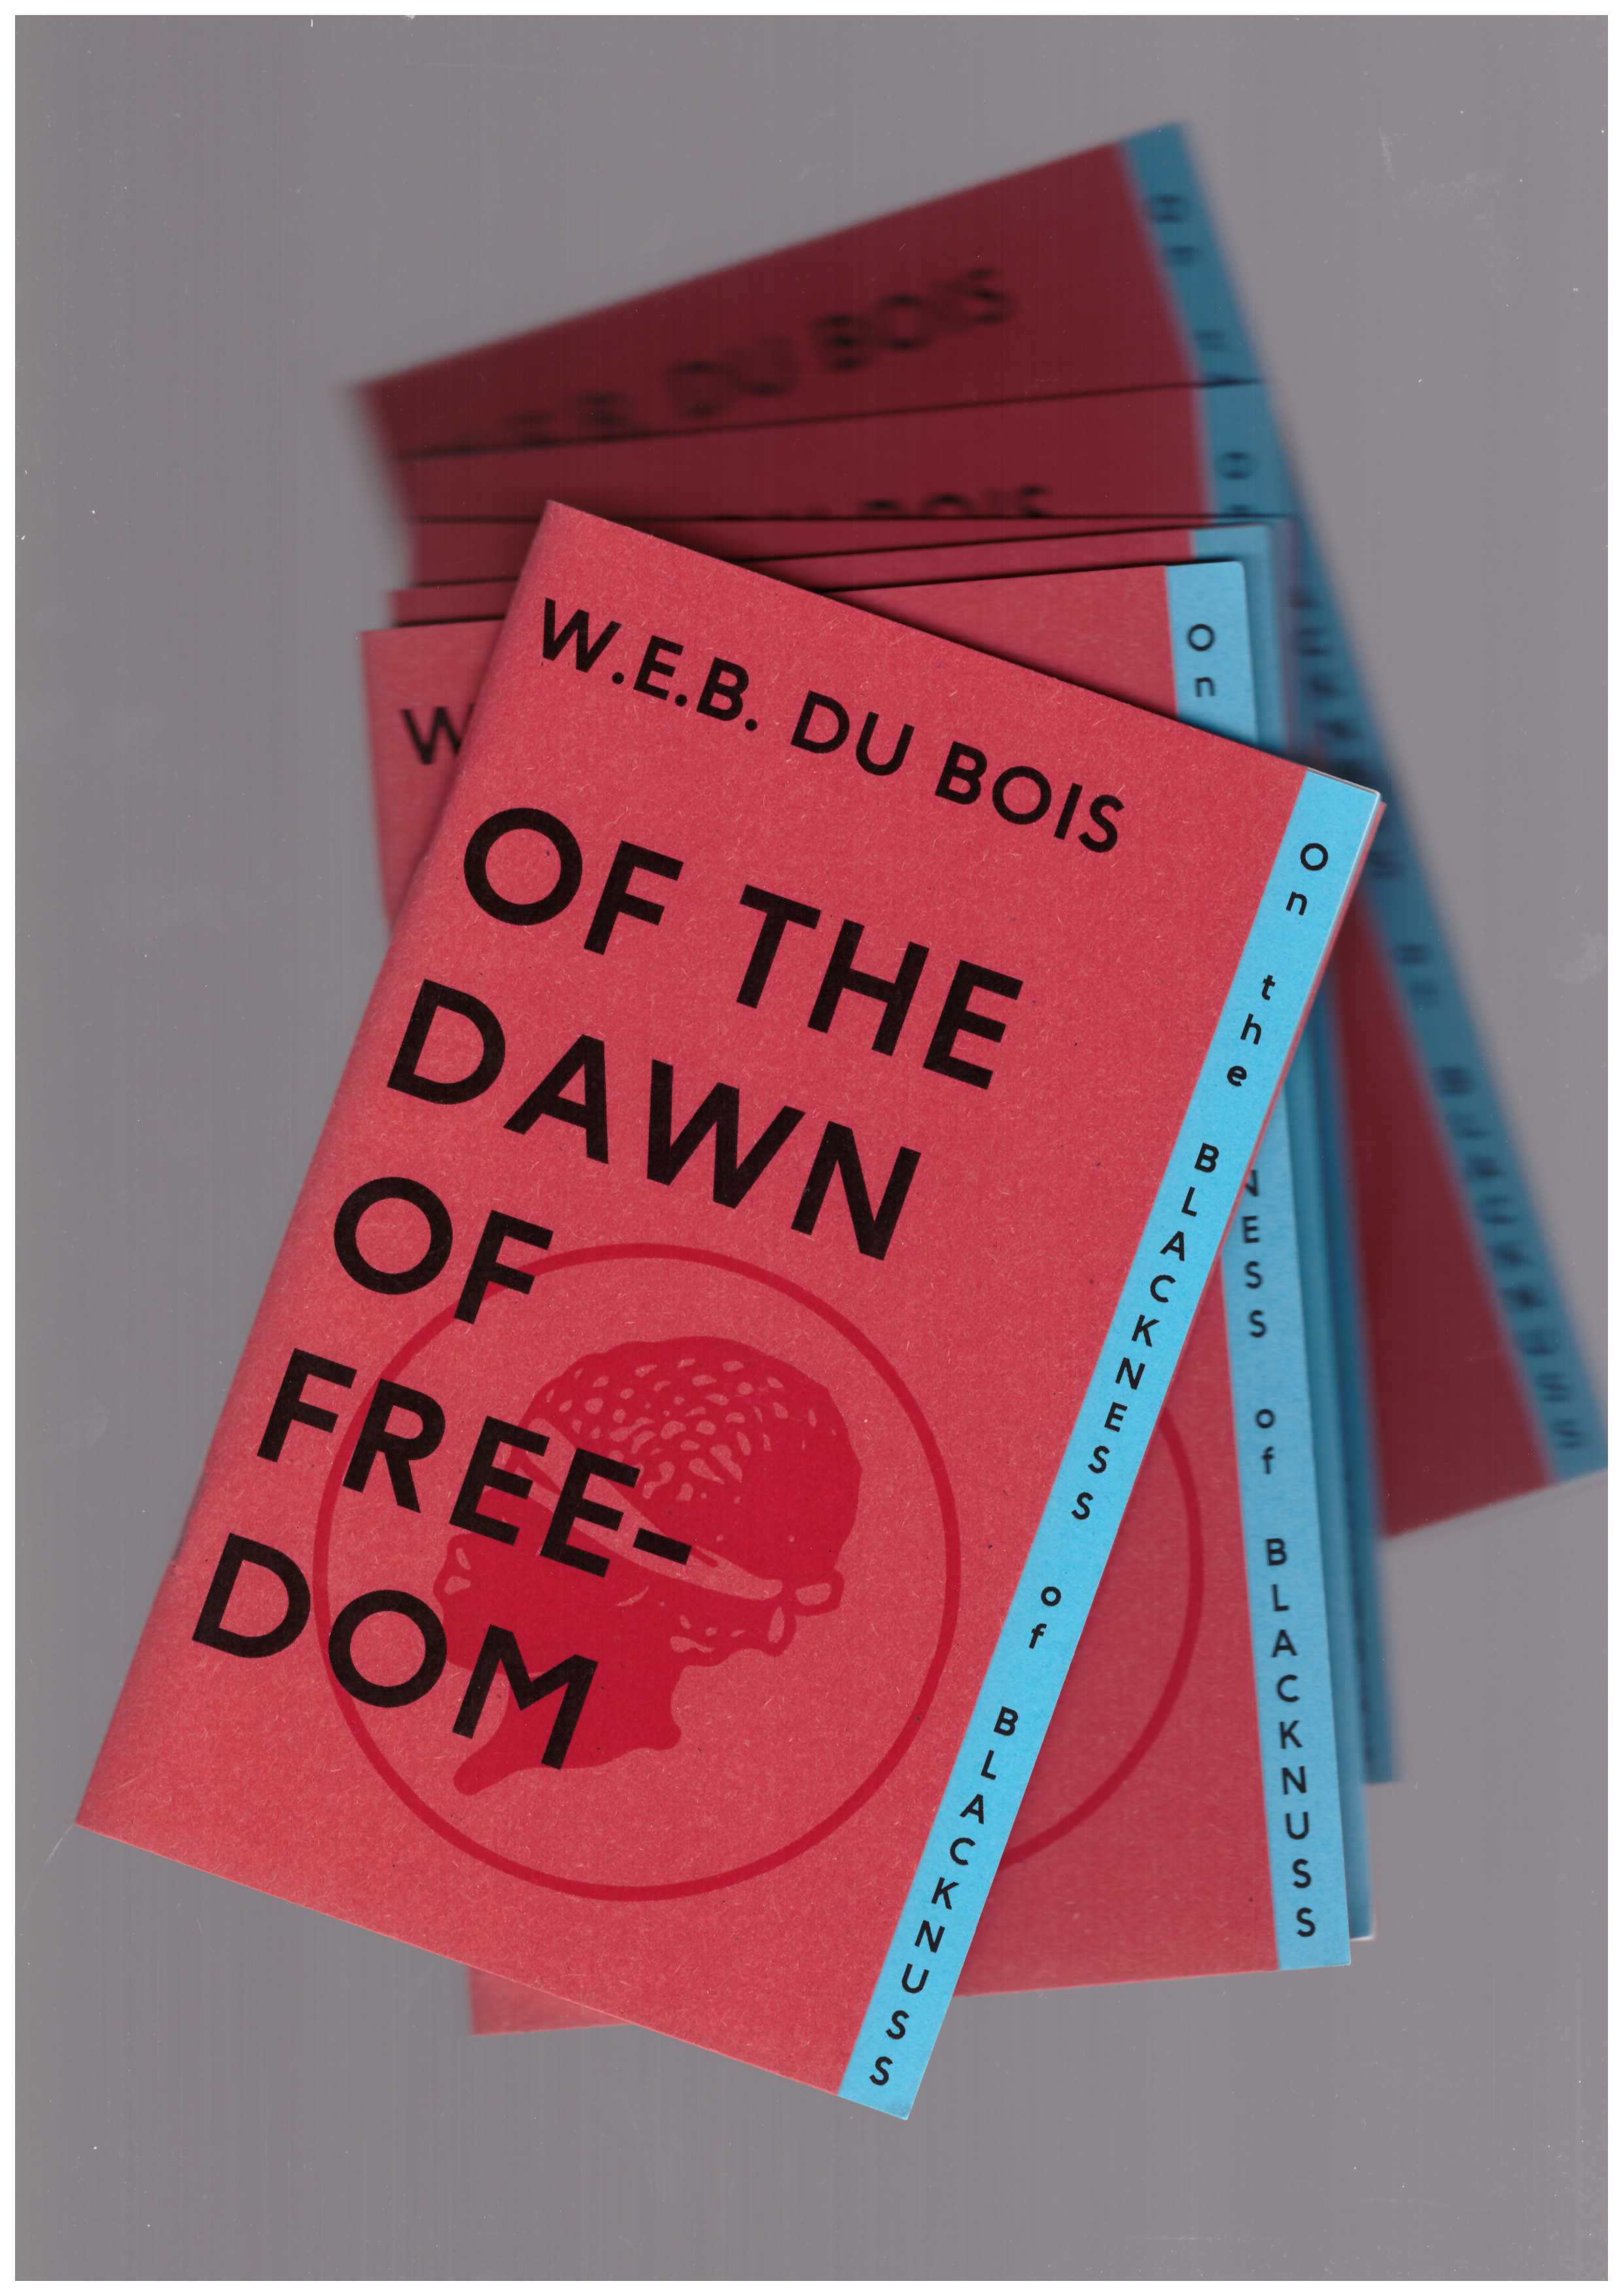 W. E. B. Du Bois - Of the Dawn of Freedom